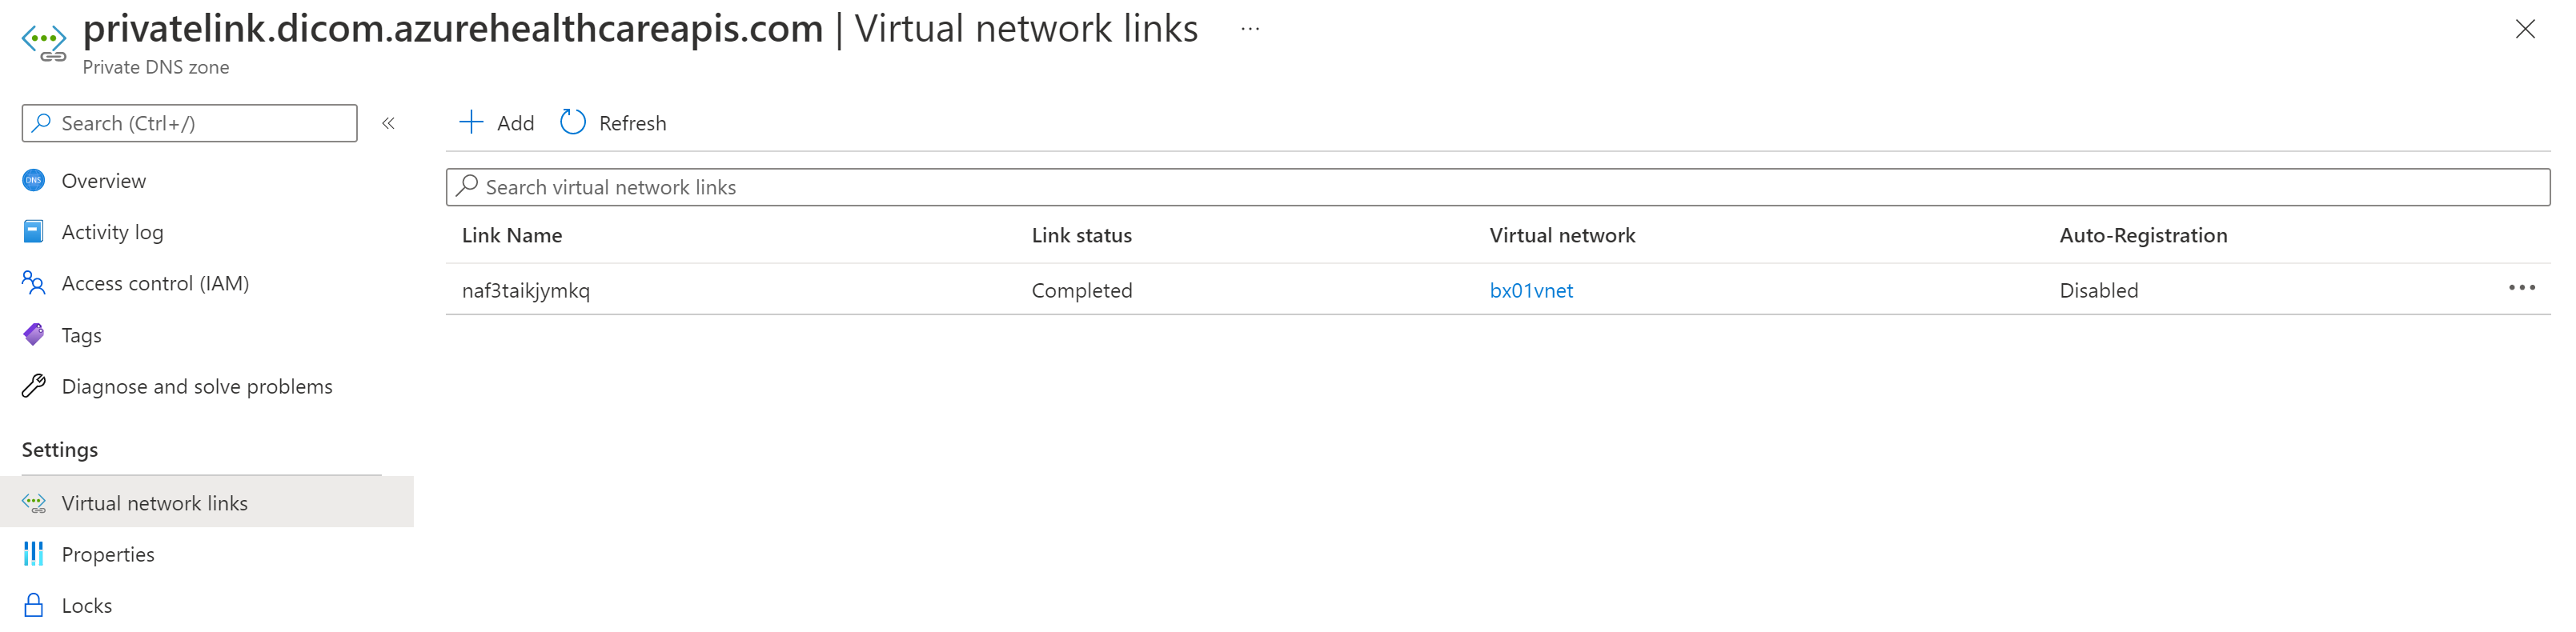 Captura de tela mostrando a imagem da rede virtual Private Link Link DICOM.